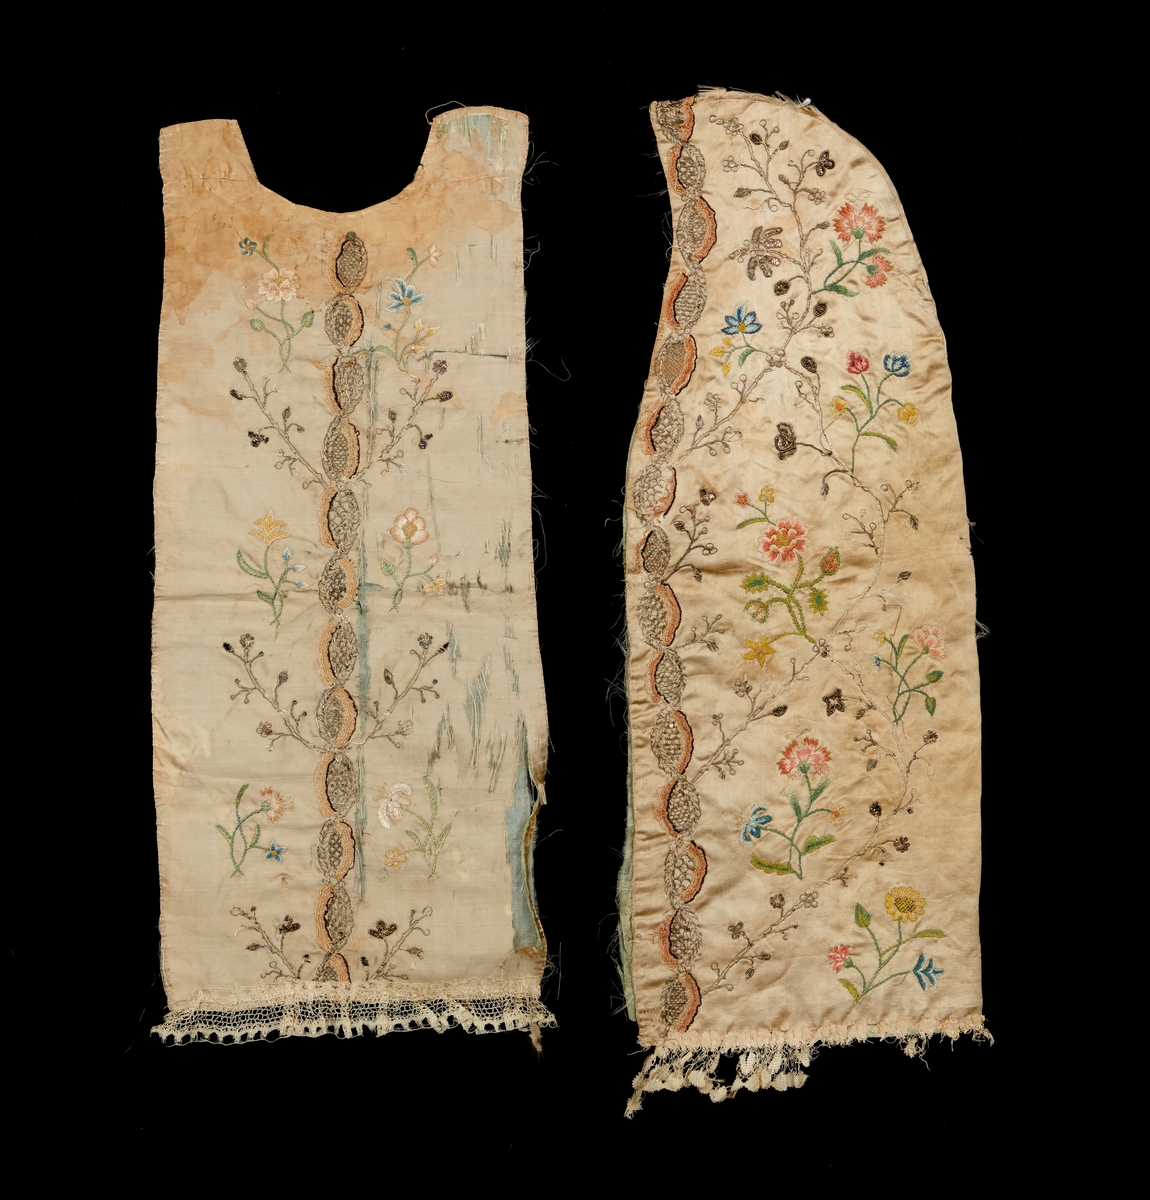 Dopklänning i två delar, från Kalmartrakten. Täcke och långt kläde för ryggsida och huvud. Av ljusgrått siden. Broderad med silvertråd, paljetter samt silke med blomstermotiv. Nedtill prydd med silkesspets.